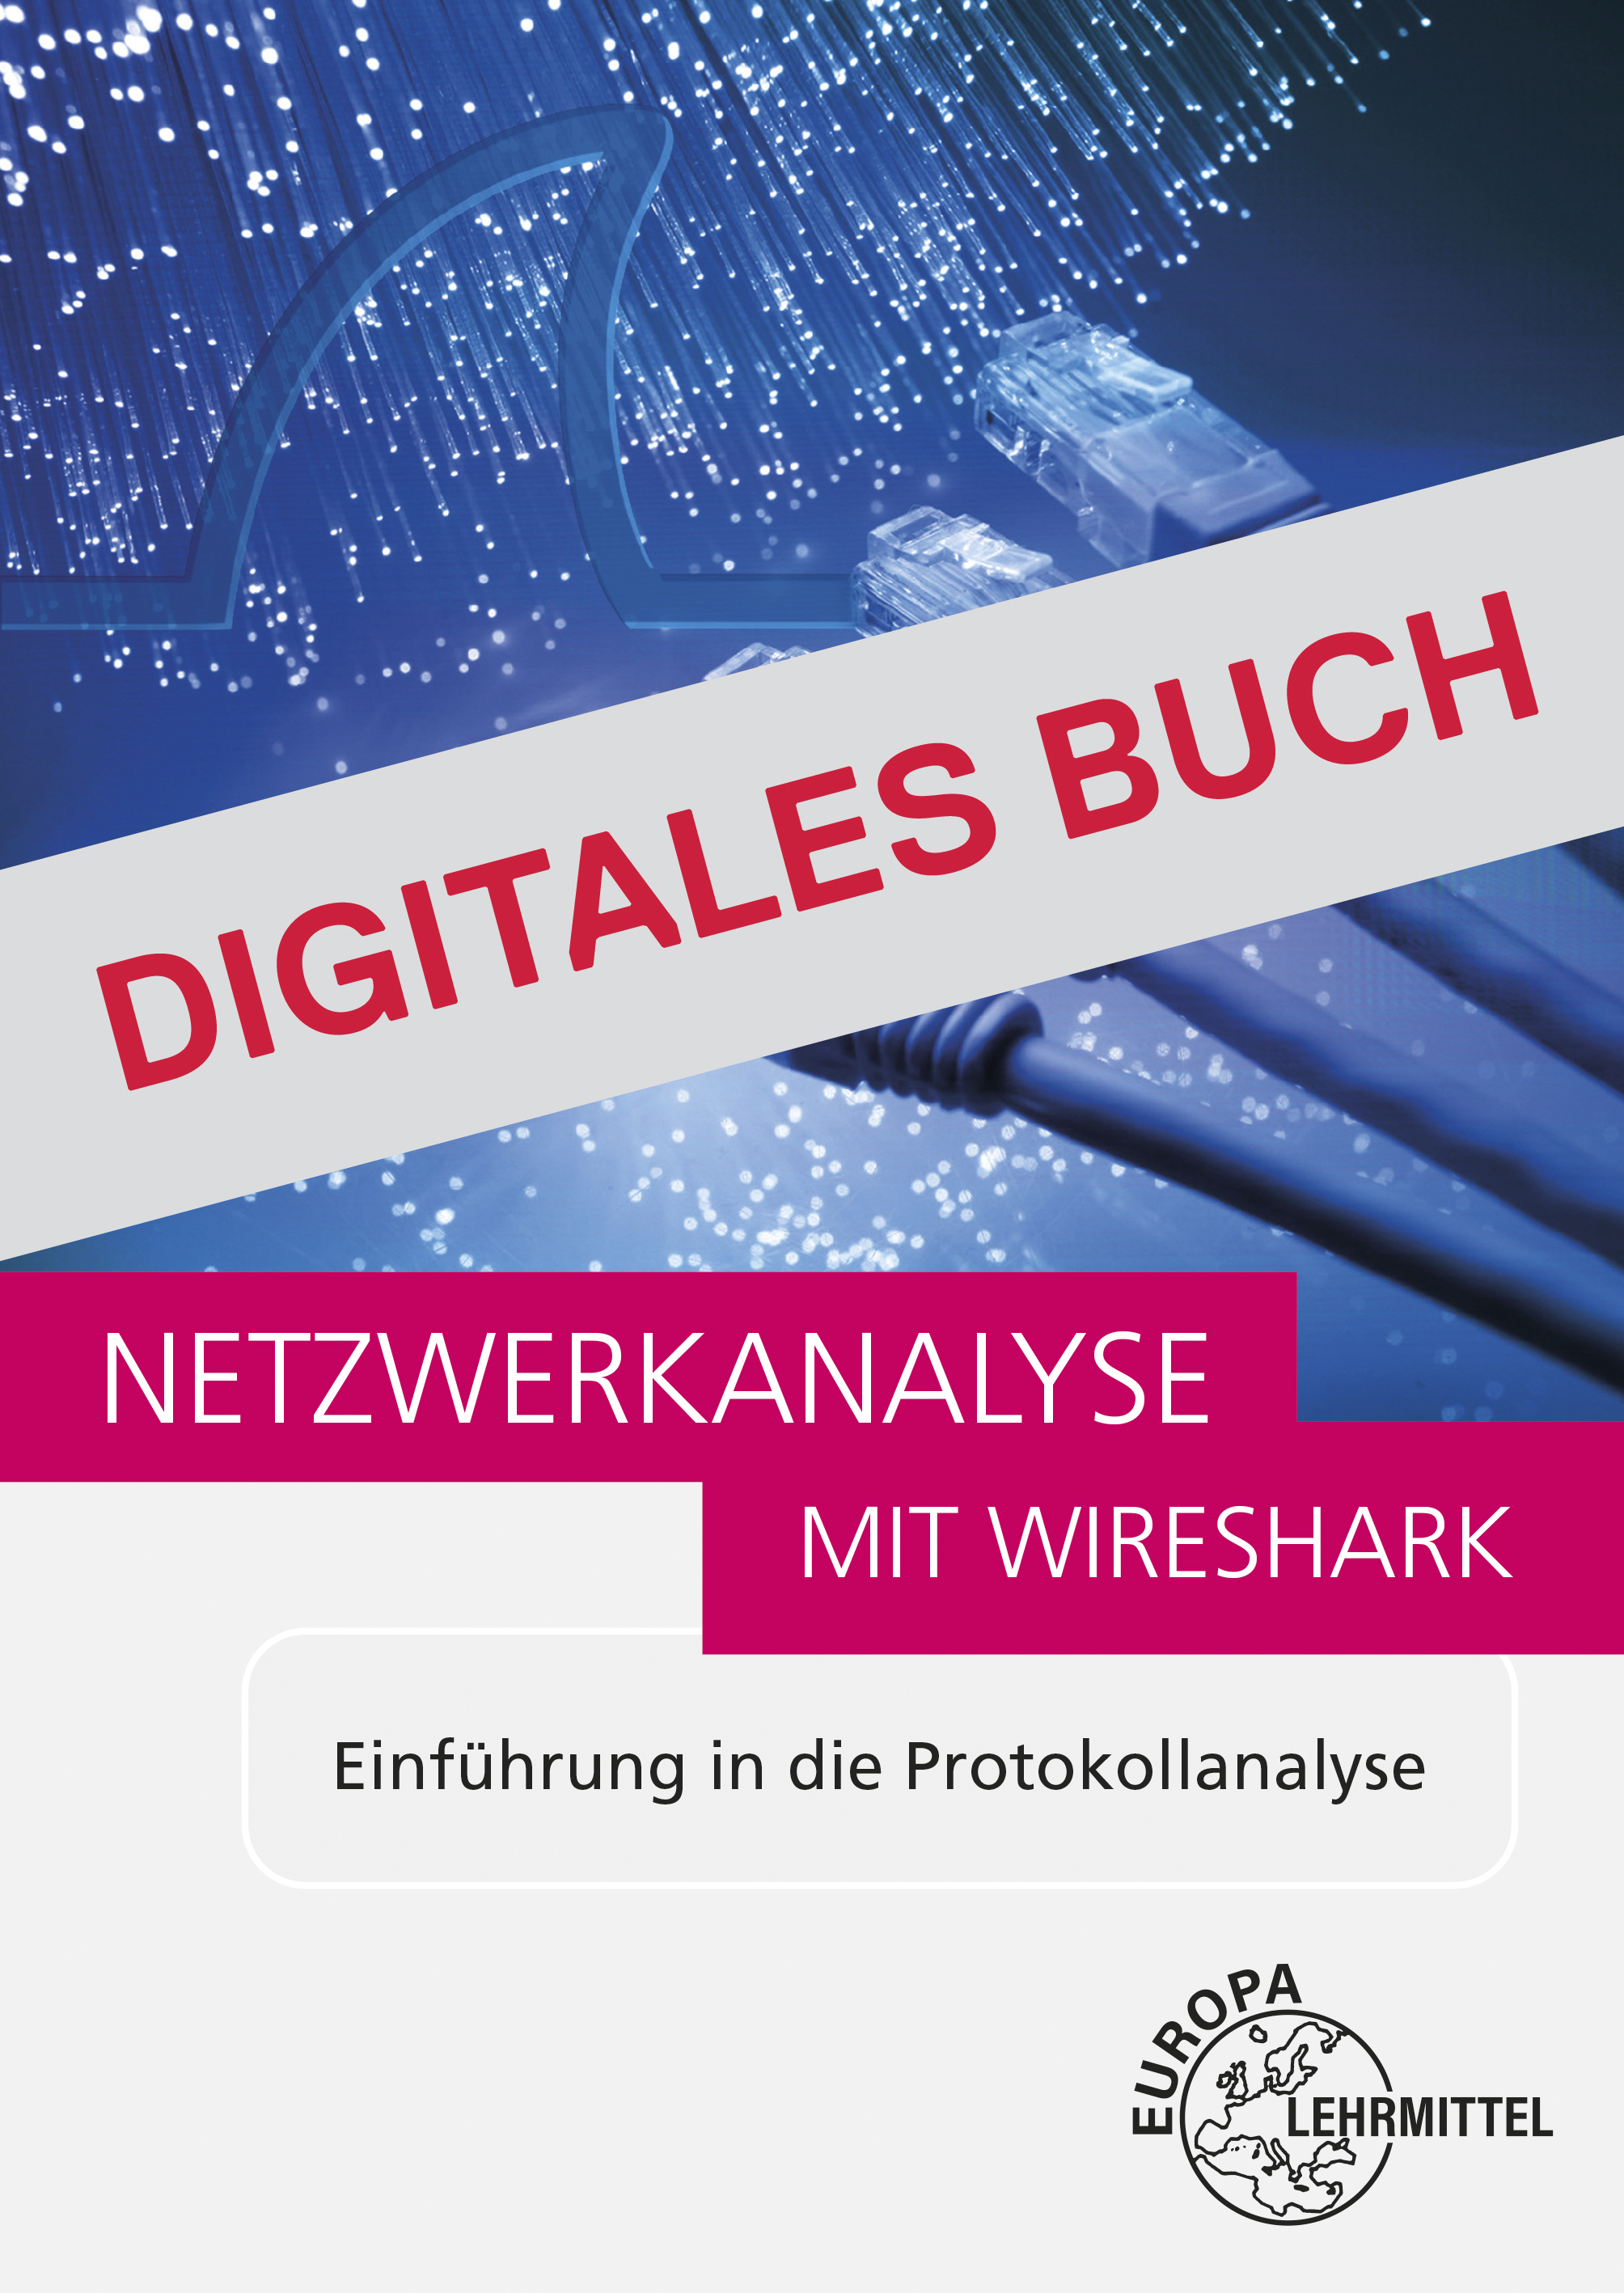 Netzwerkanalyse mit Wireshark 2.0 - Digitales Buch